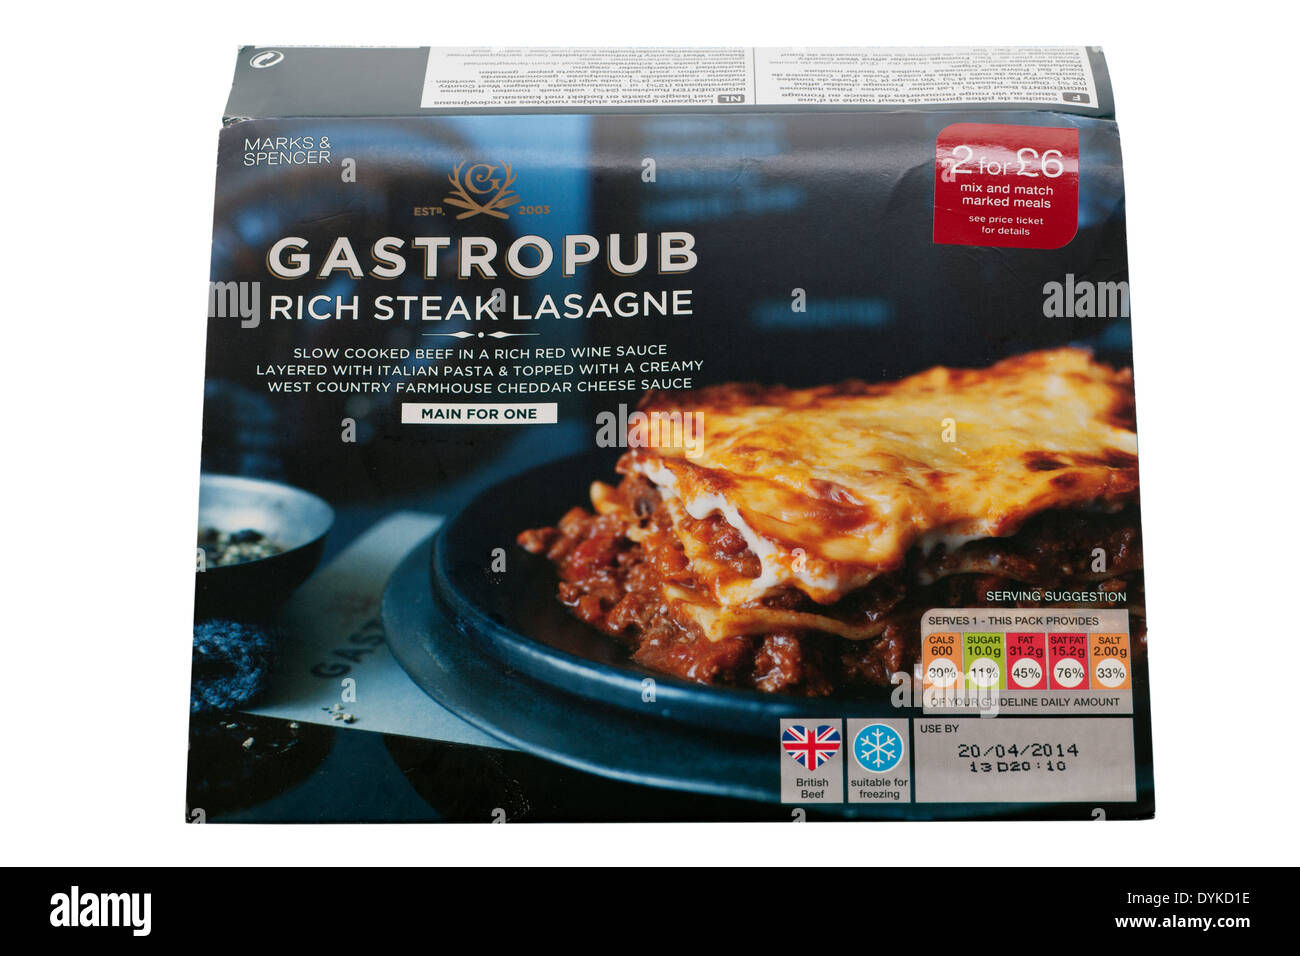 Marks & Spencer Gastropub ricca lasagna bistecca etichetta con la carne di manzo britannica e datato con importo giornaliero di indirizzo Foto Stock